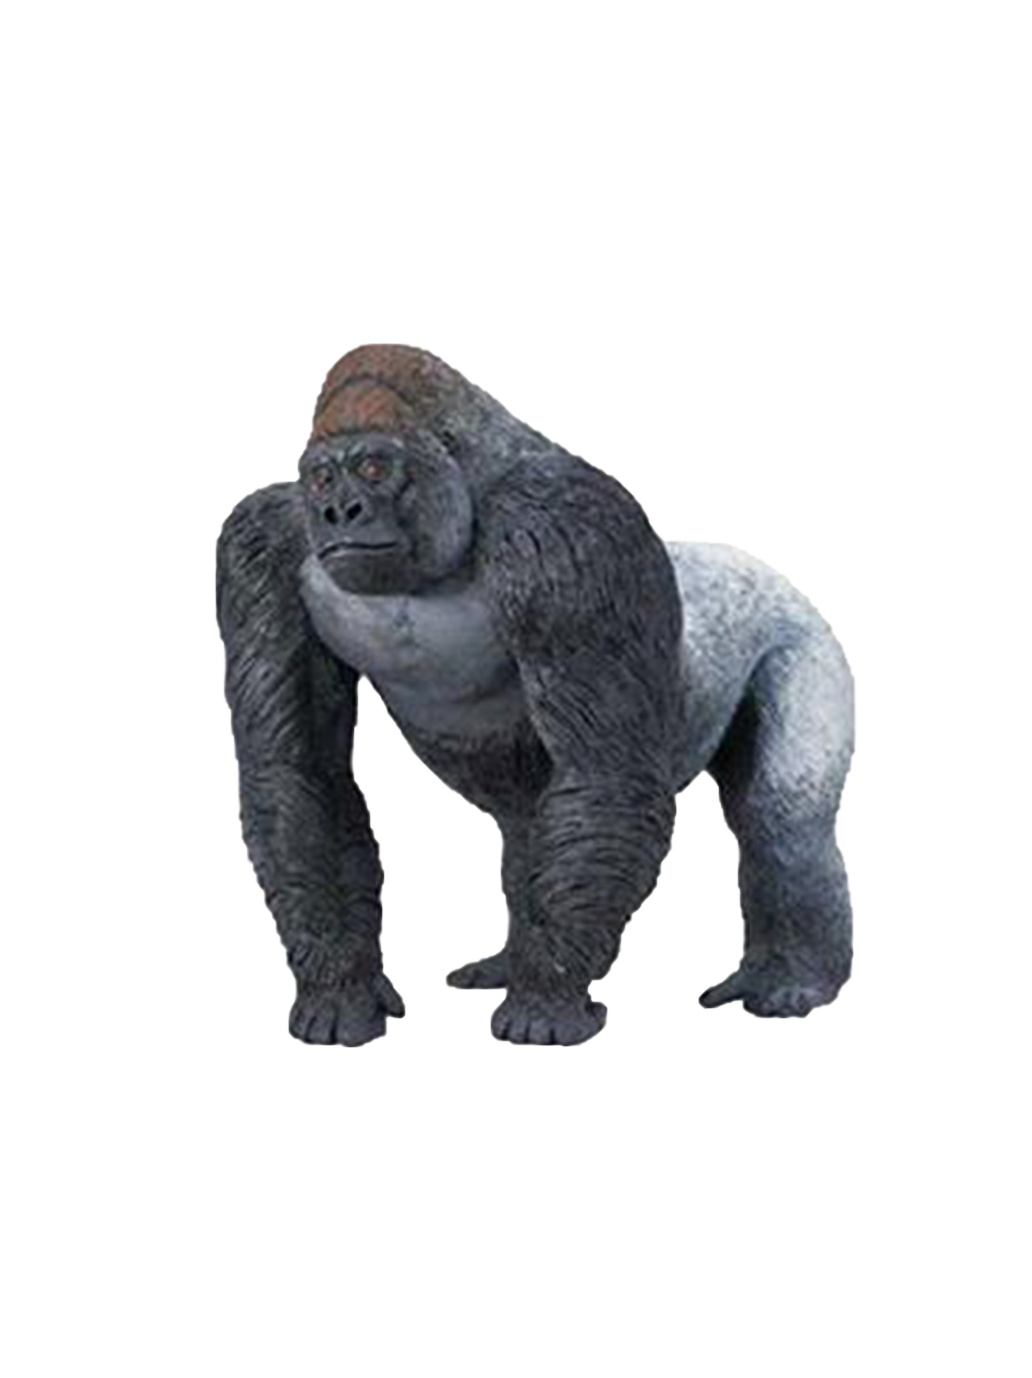 Big gorilla figurine